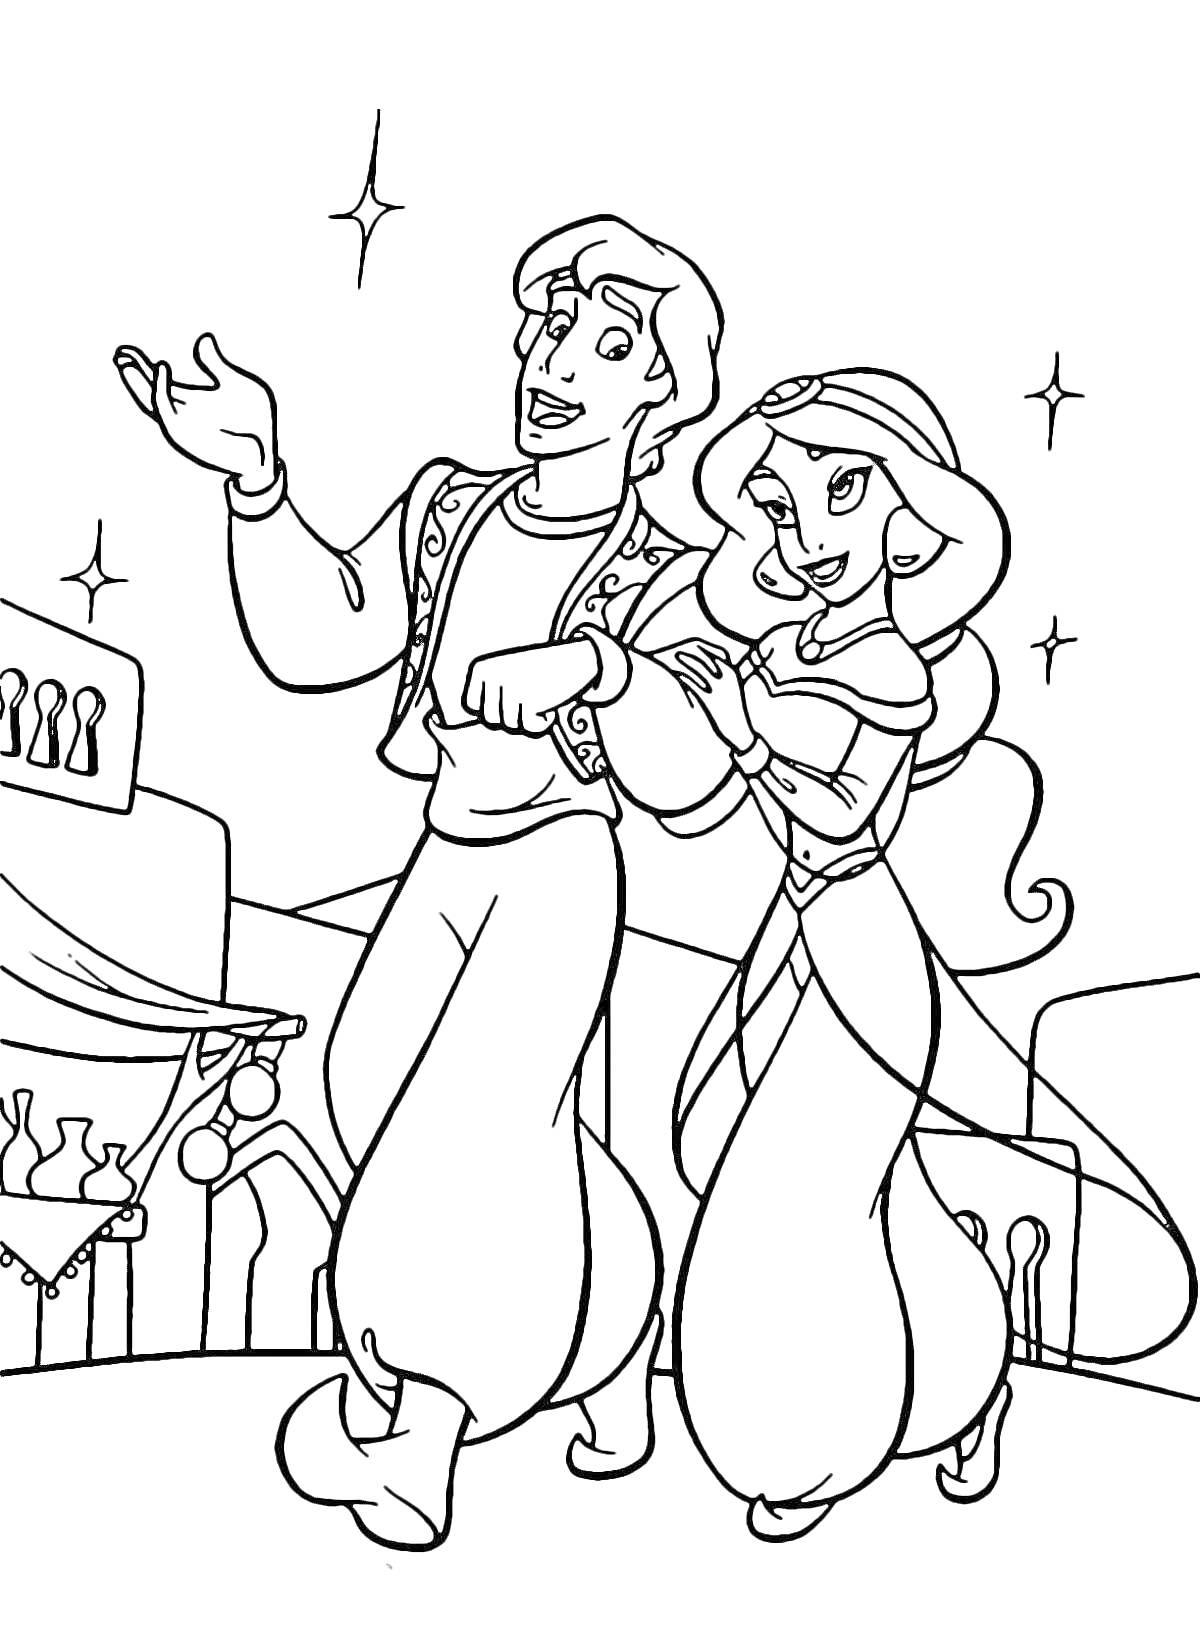 Алладин и Жасмин прогуливаются по городу с рынком на заднем плане и звёздами на небе